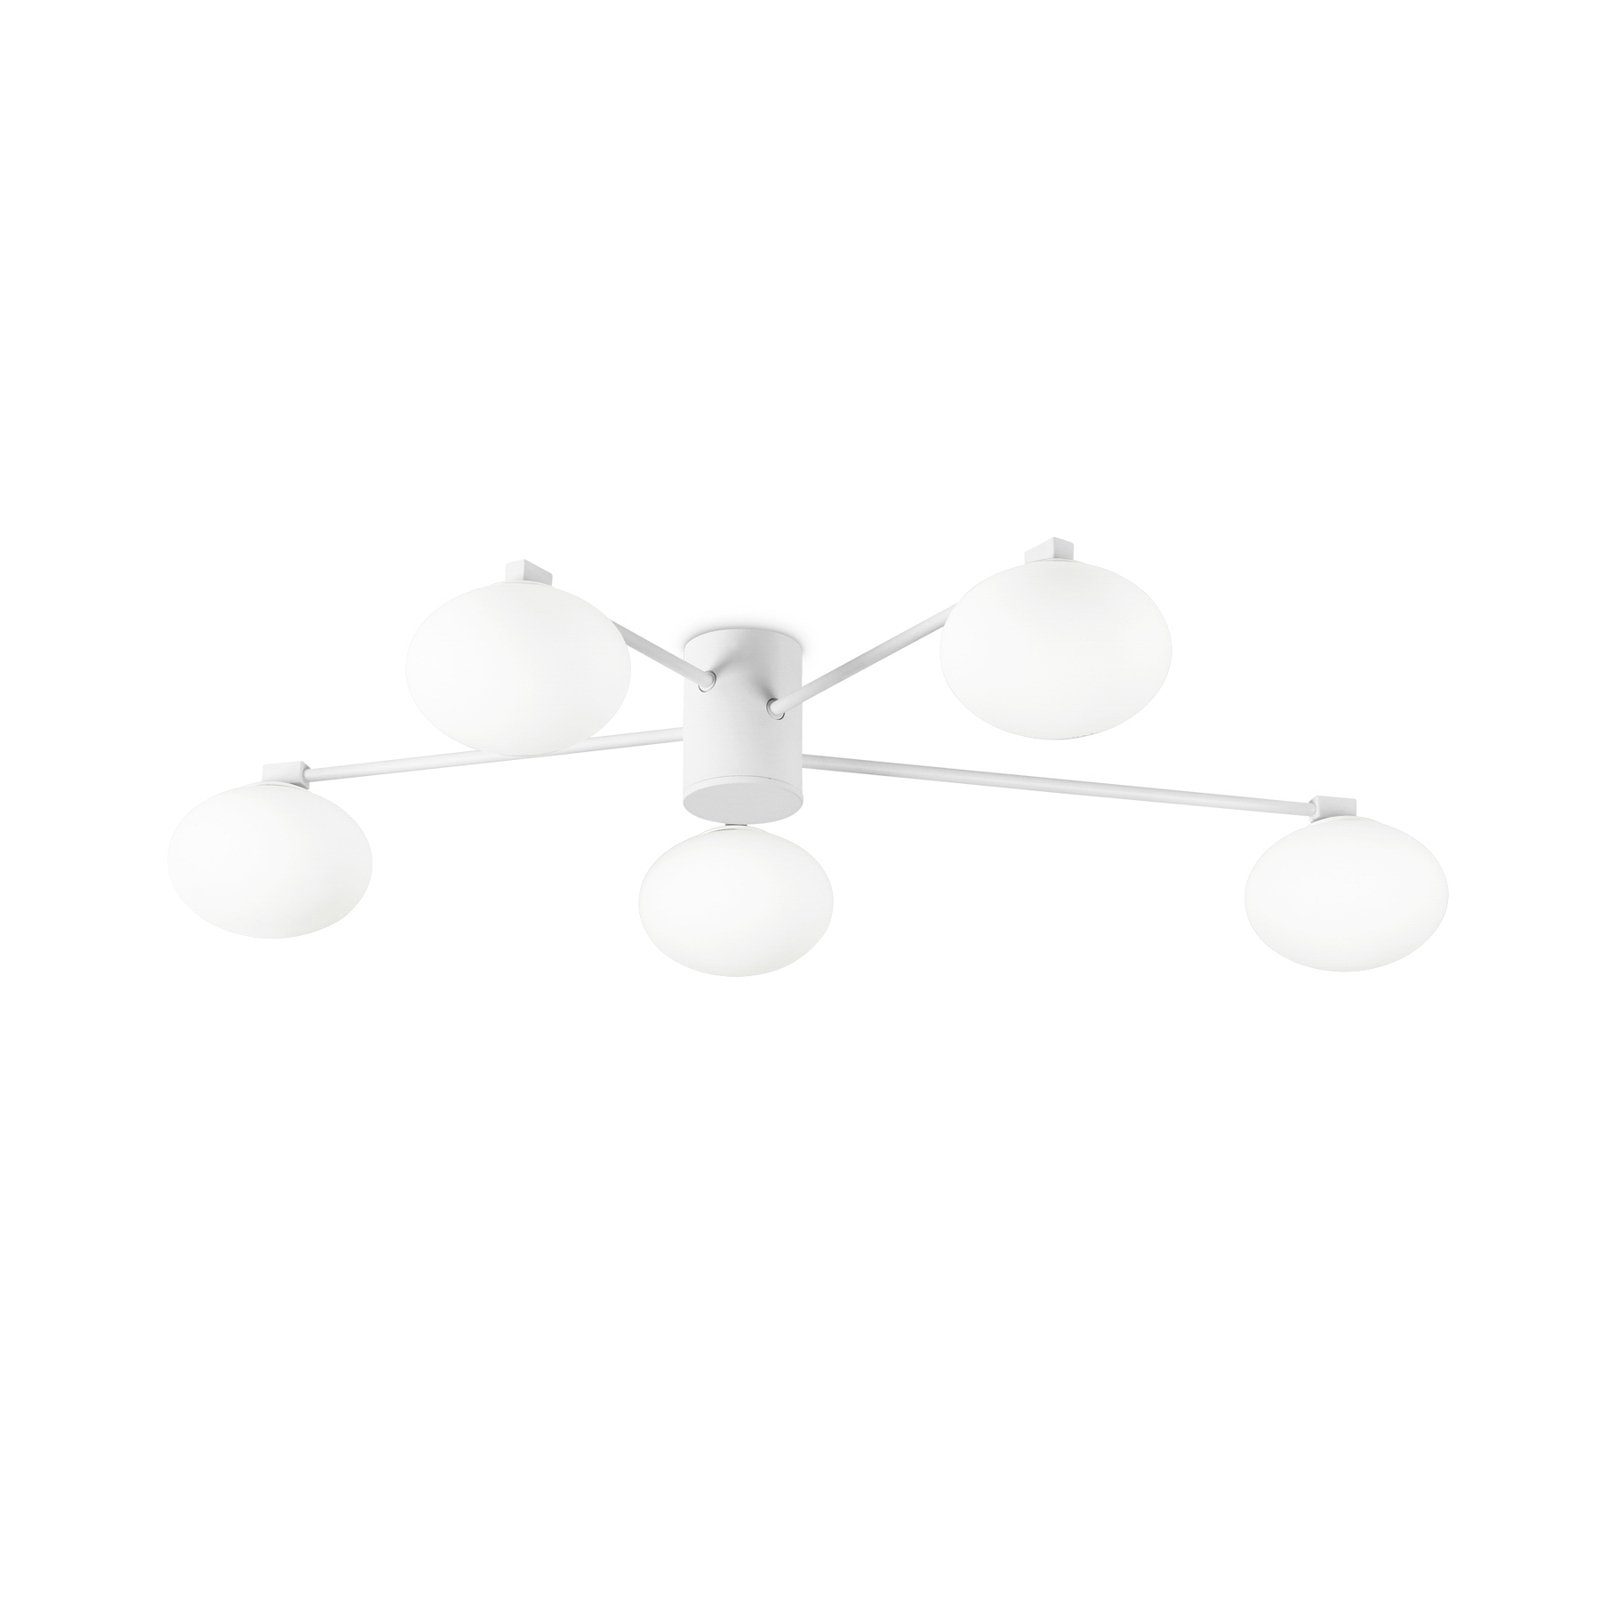 Ideal Lux Hermes ceiling light, white, 90 cm, 5-bulb, glass